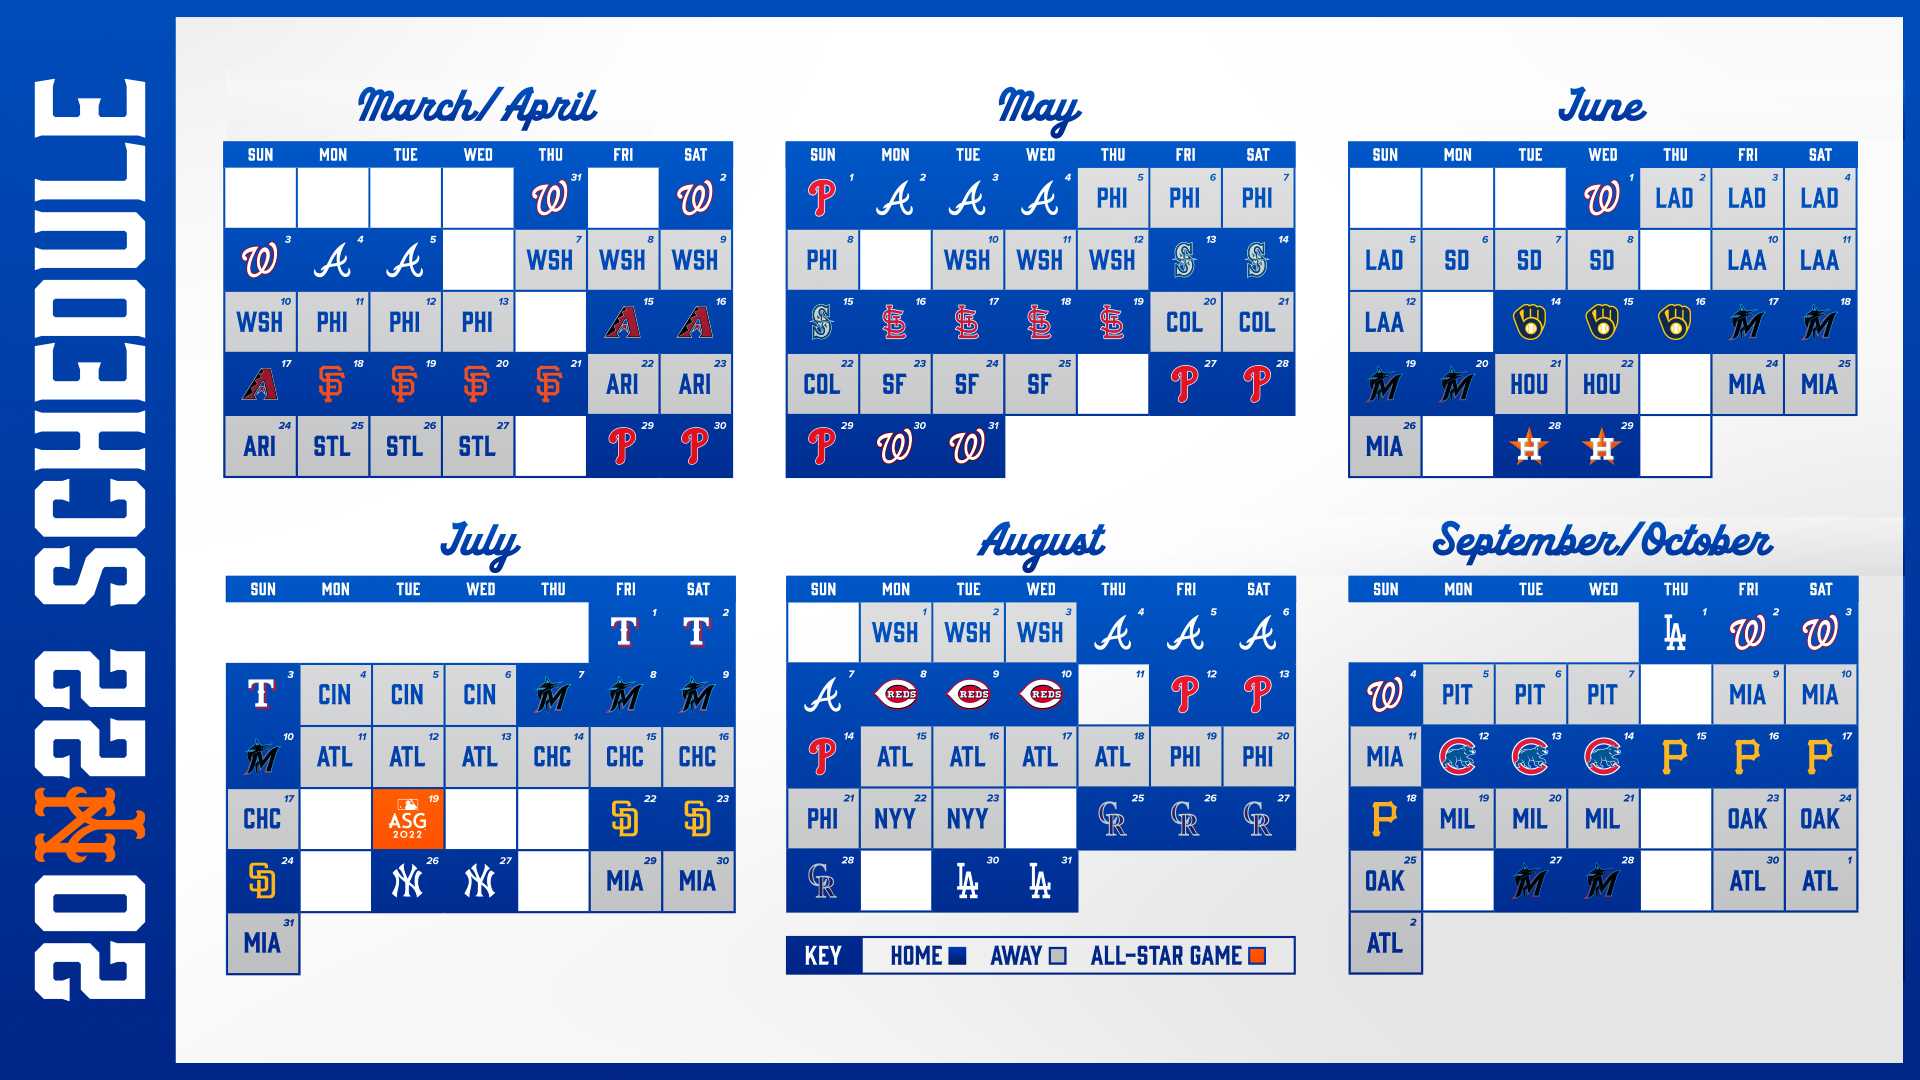 Mets Schedule 2022 New York Mets On Twitter: "Full 2022 Schedule. 🗓👇  Https://T.co/Ivqiljxfbj" / Twitter